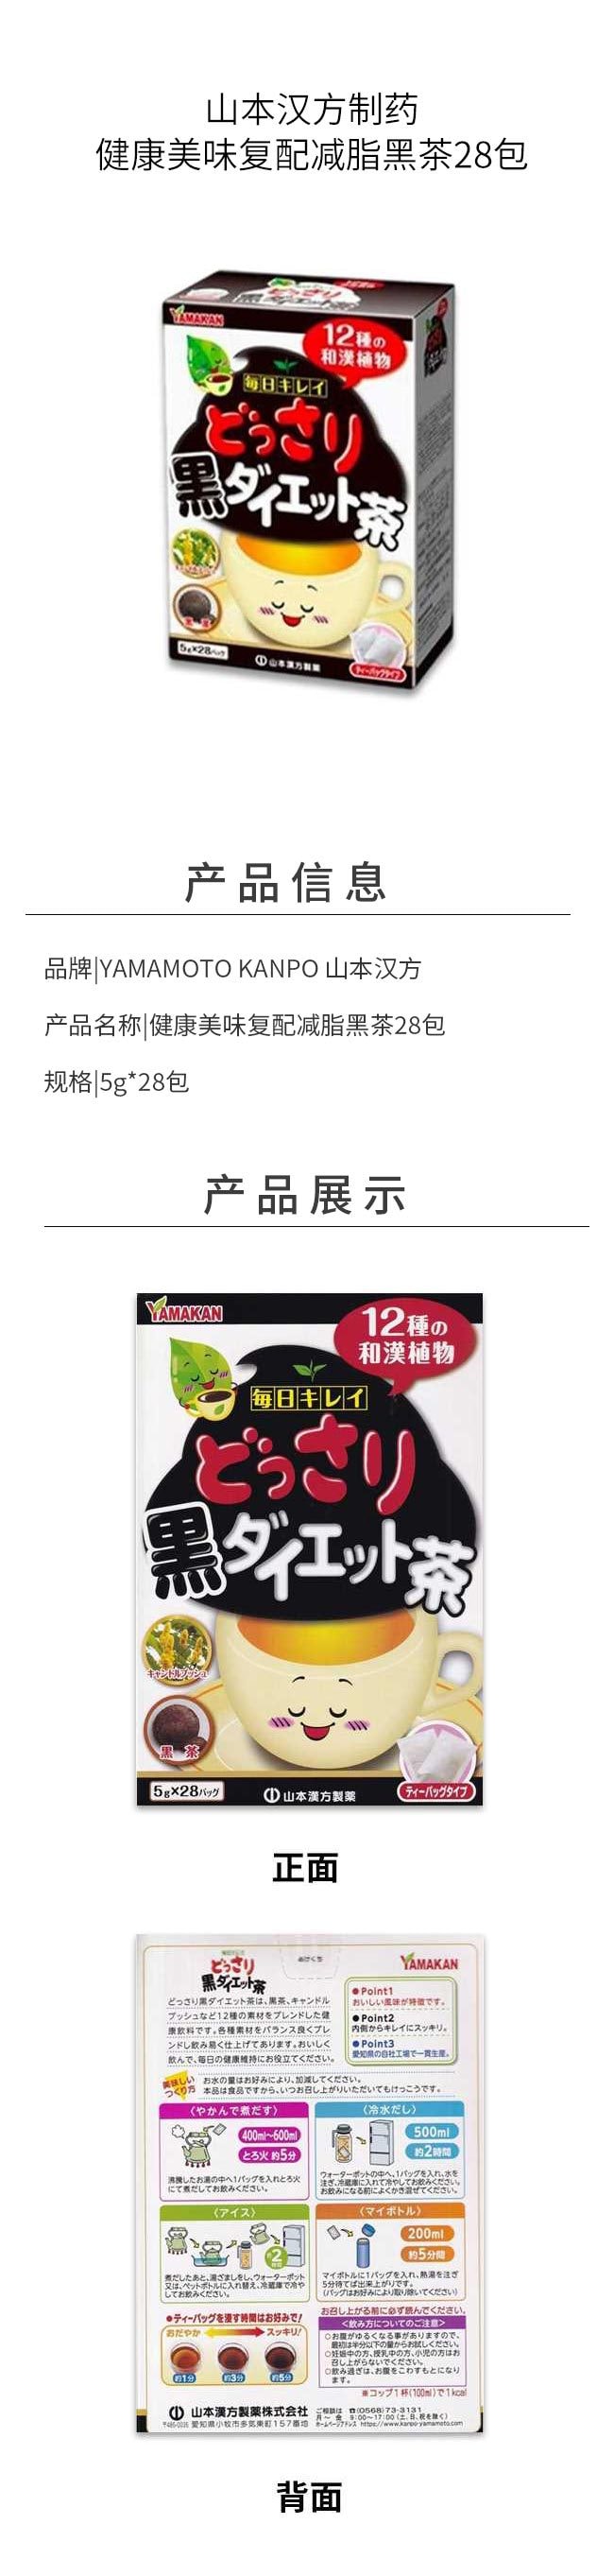 【日本直效郵件】YAMAMOTO山本漢方製藥 濃黑減肥茶 28包入